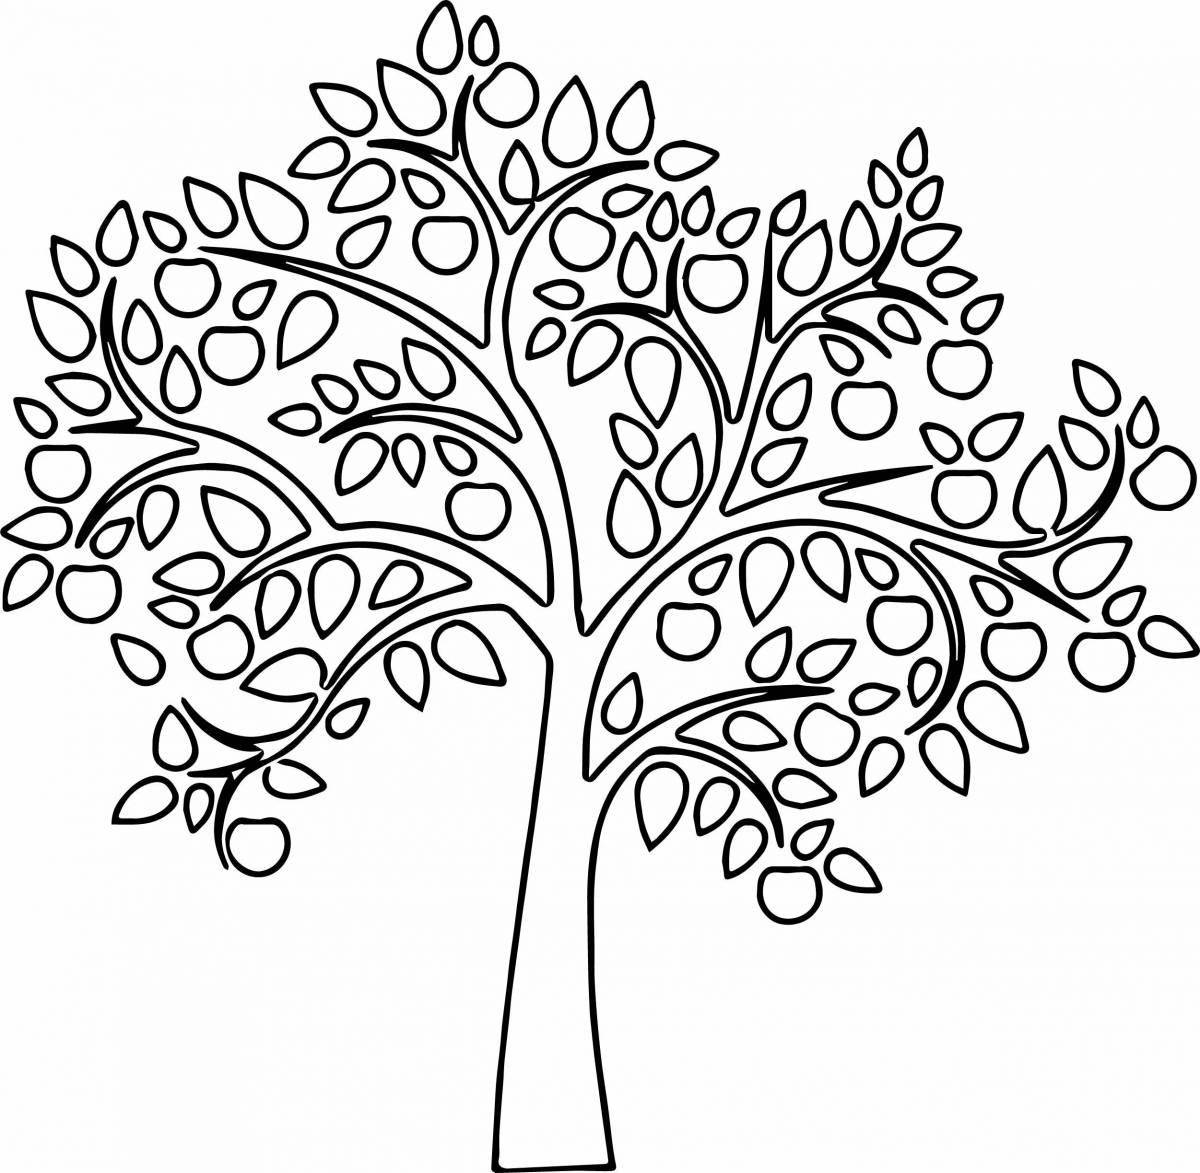 Раскраска яркое дерево для детей 5-6 лет